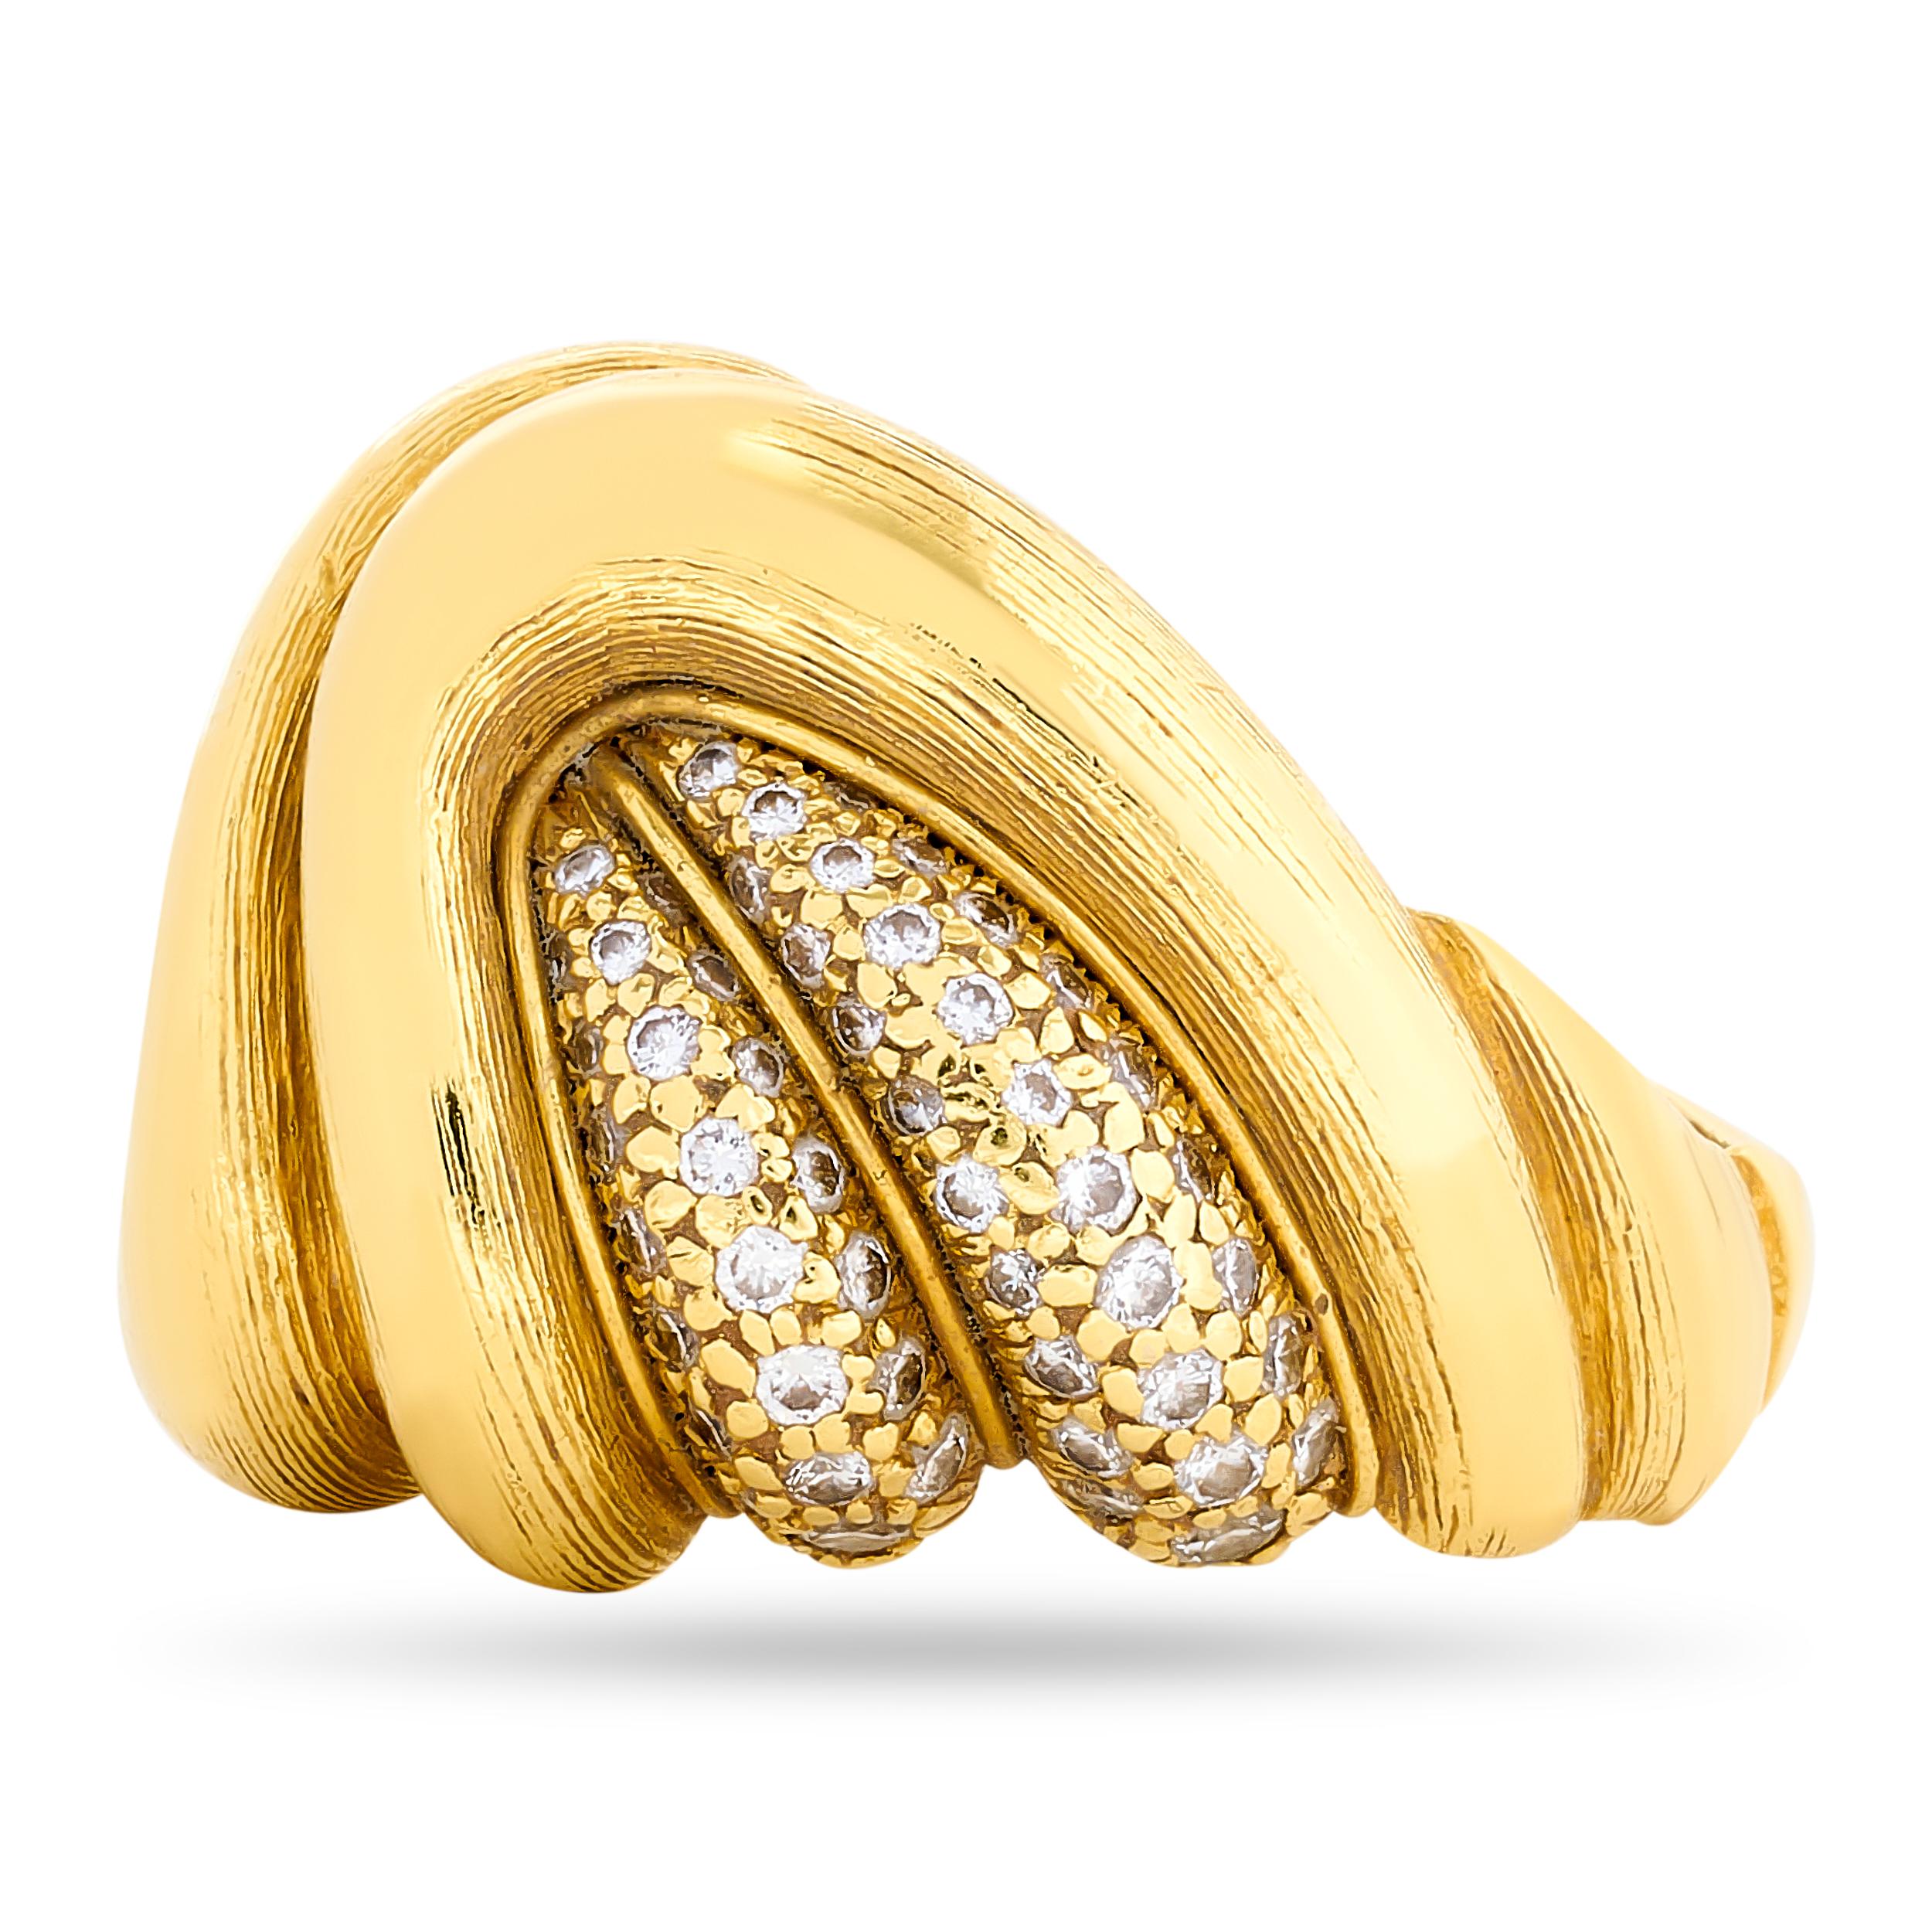 Libérer l'art de l'or et du diamant. Cette bague à tourbillon de diamants en or brossé de Dunay est le symbole d'un savoir-faire exquis et d'un style luxueux.

Réalisée en or jaune 18 carats, cette bague contient 102 diamants ronds totalisant